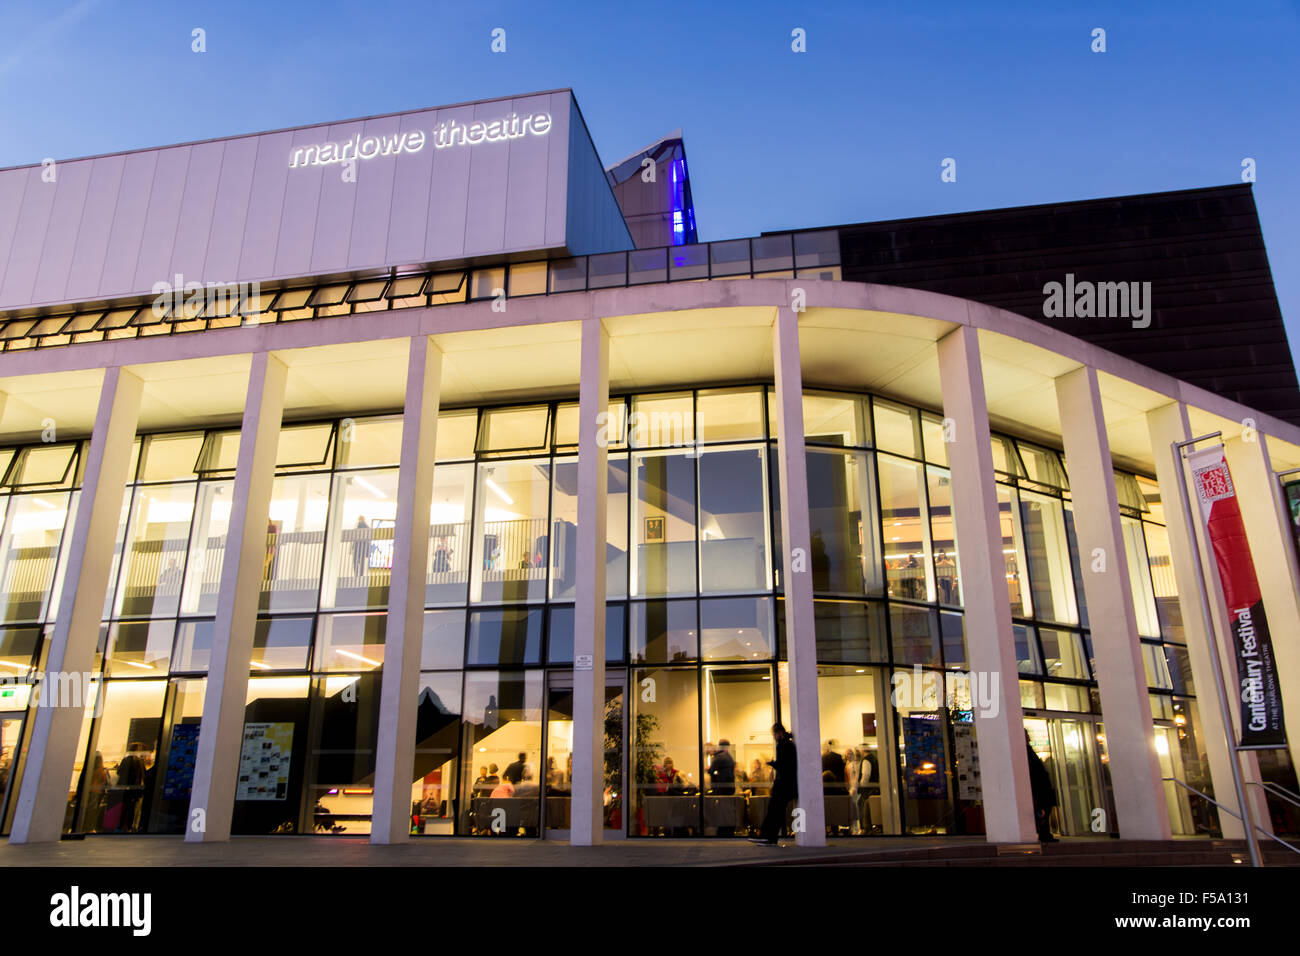 Vue de nuit Nouveau moderne Théâtre Marlowe Canterbury Kent UK Banque D'Images